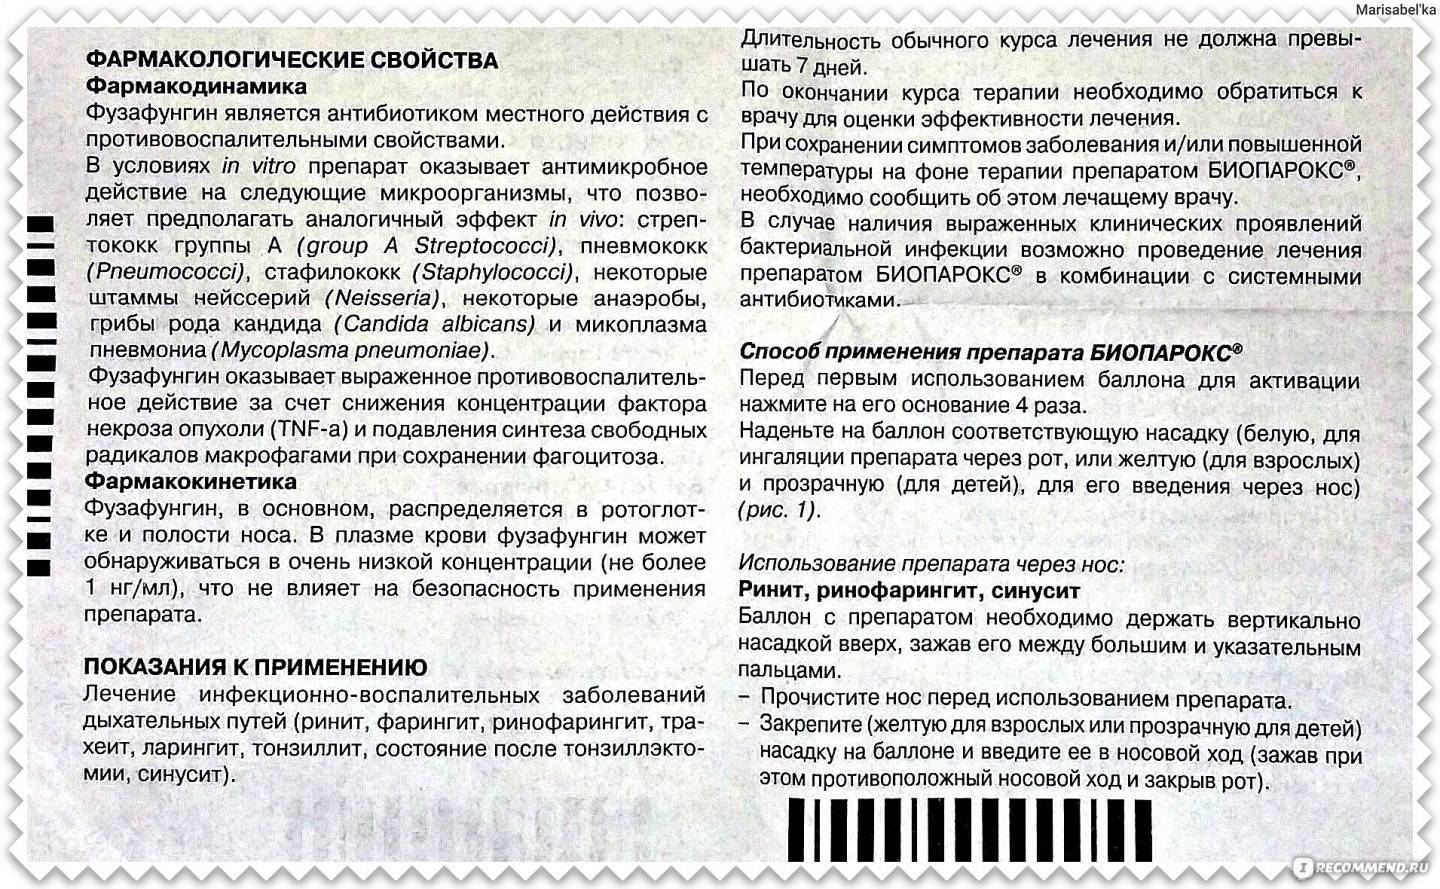 Биопарокс при беременности: инструкция по применению / mama66.ru